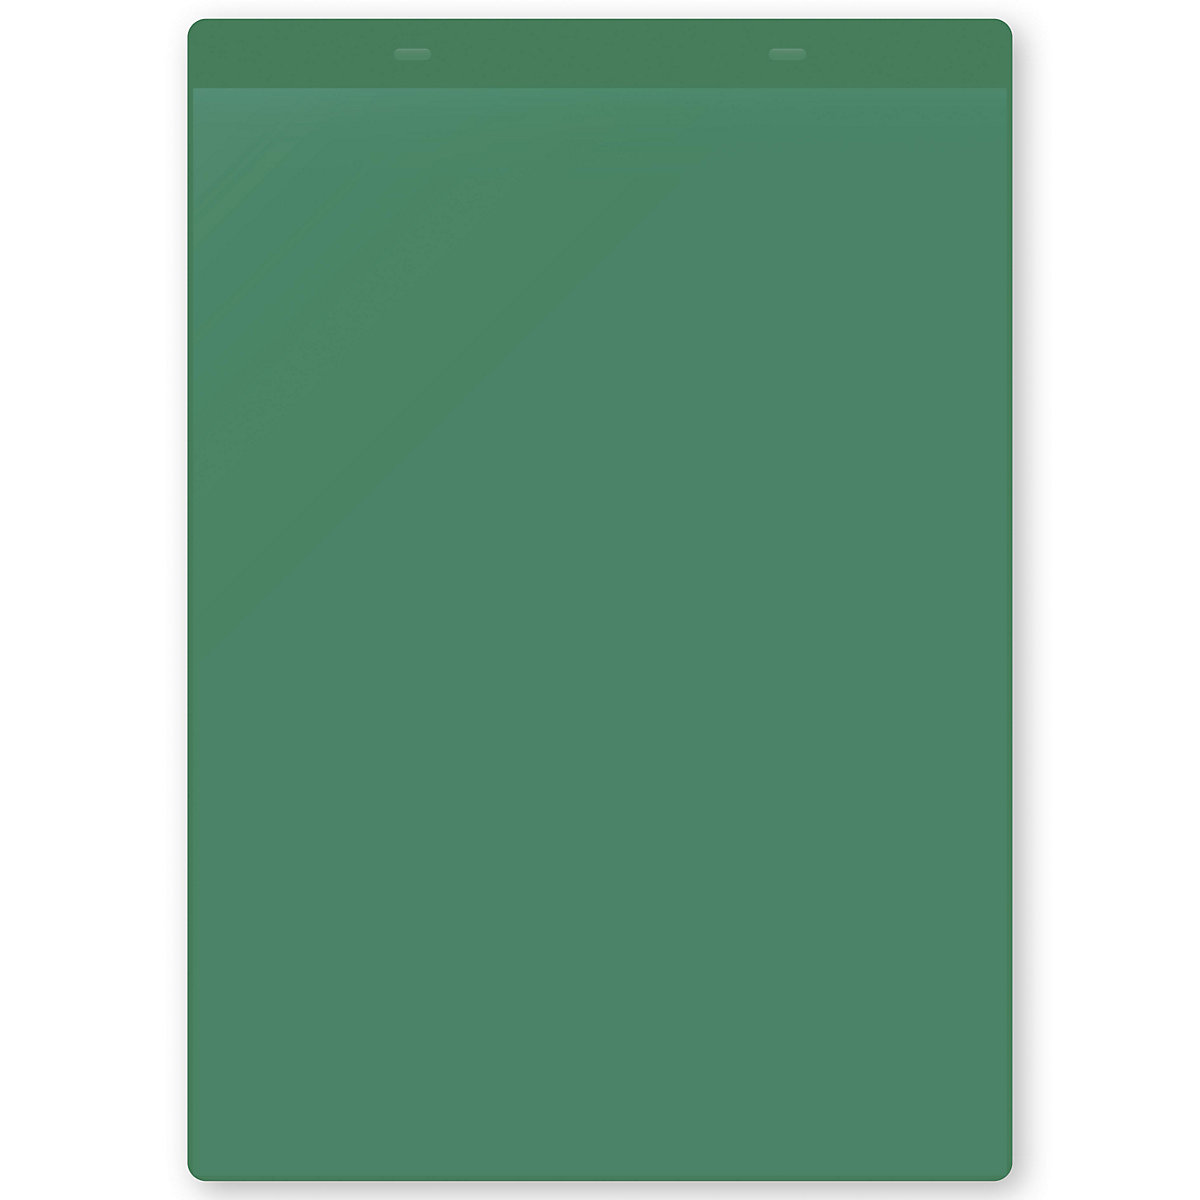 Öntapadó dokumentumtartó tasakok, DIN A4, álló, cs. e. 50 db, zöld